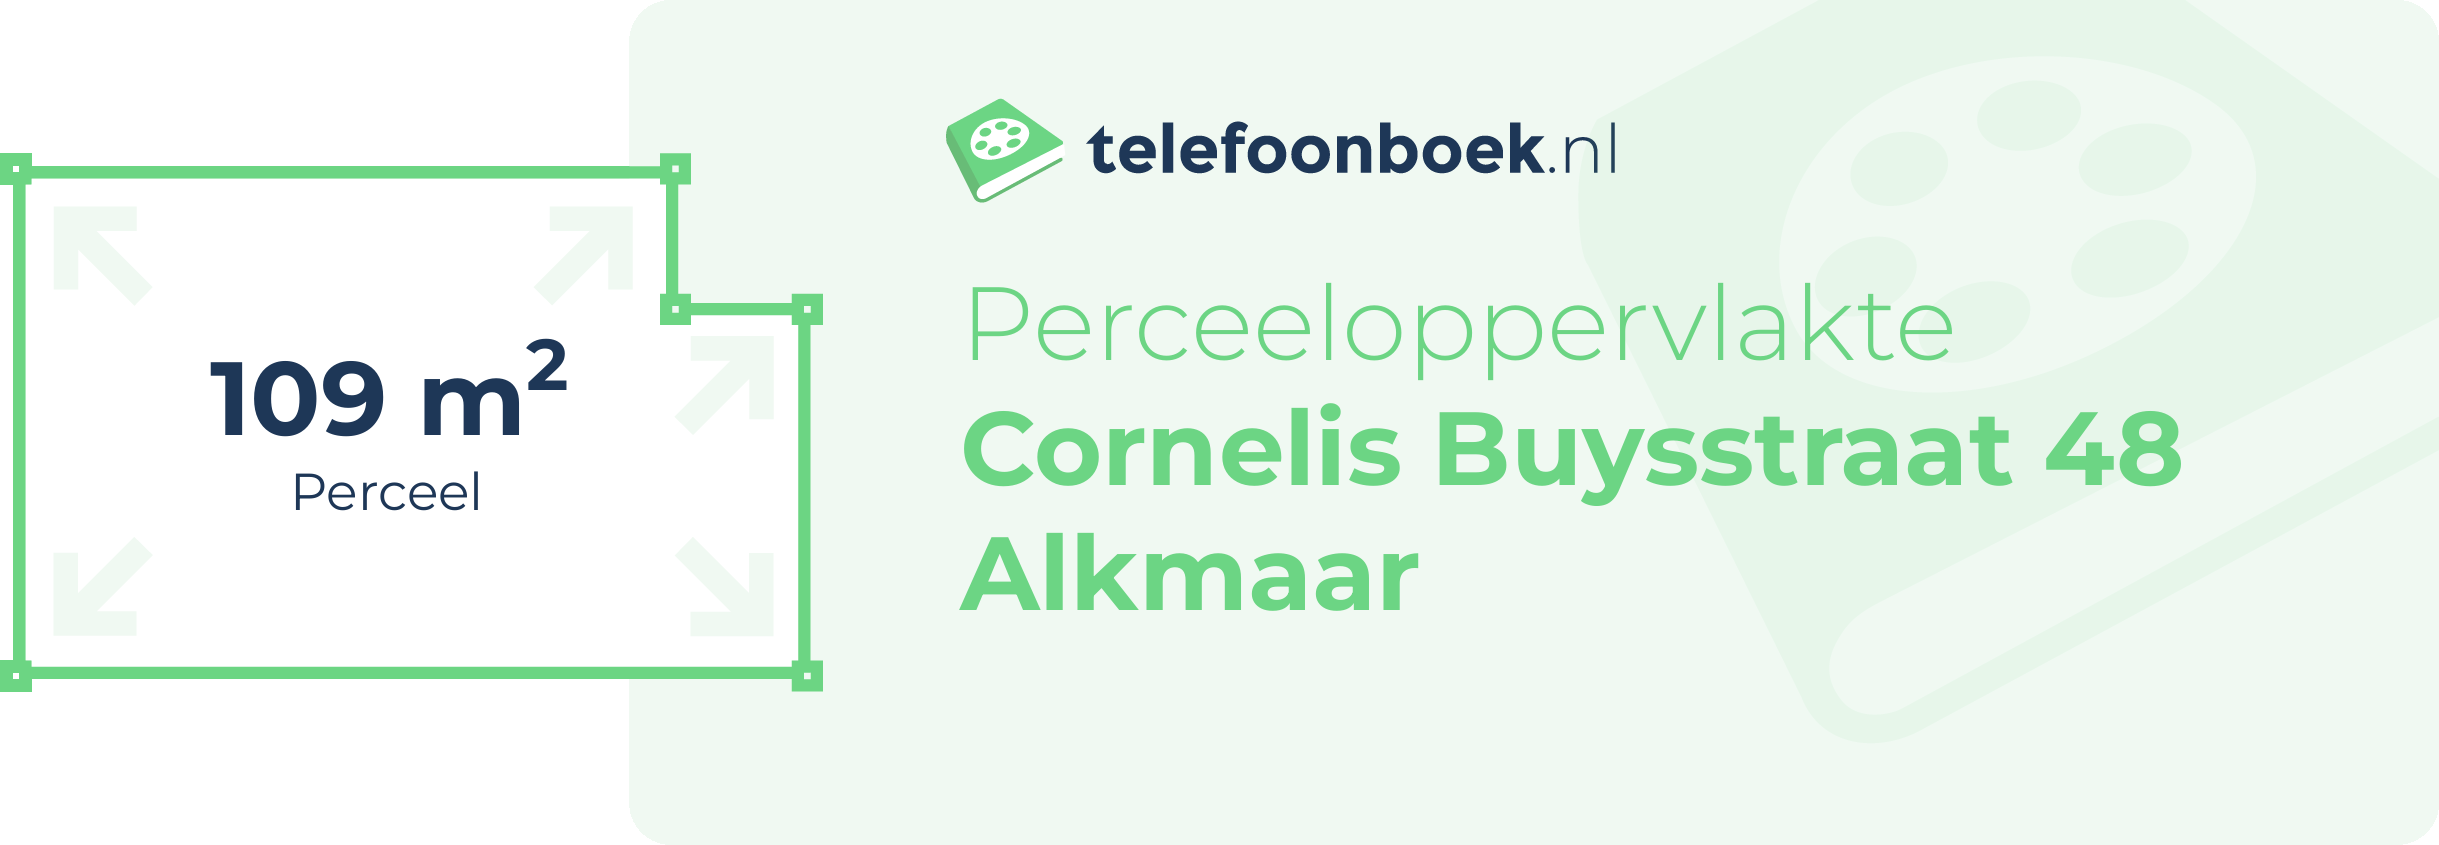 Perceeloppervlakte Cornelis Buysstraat 48 Alkmaar